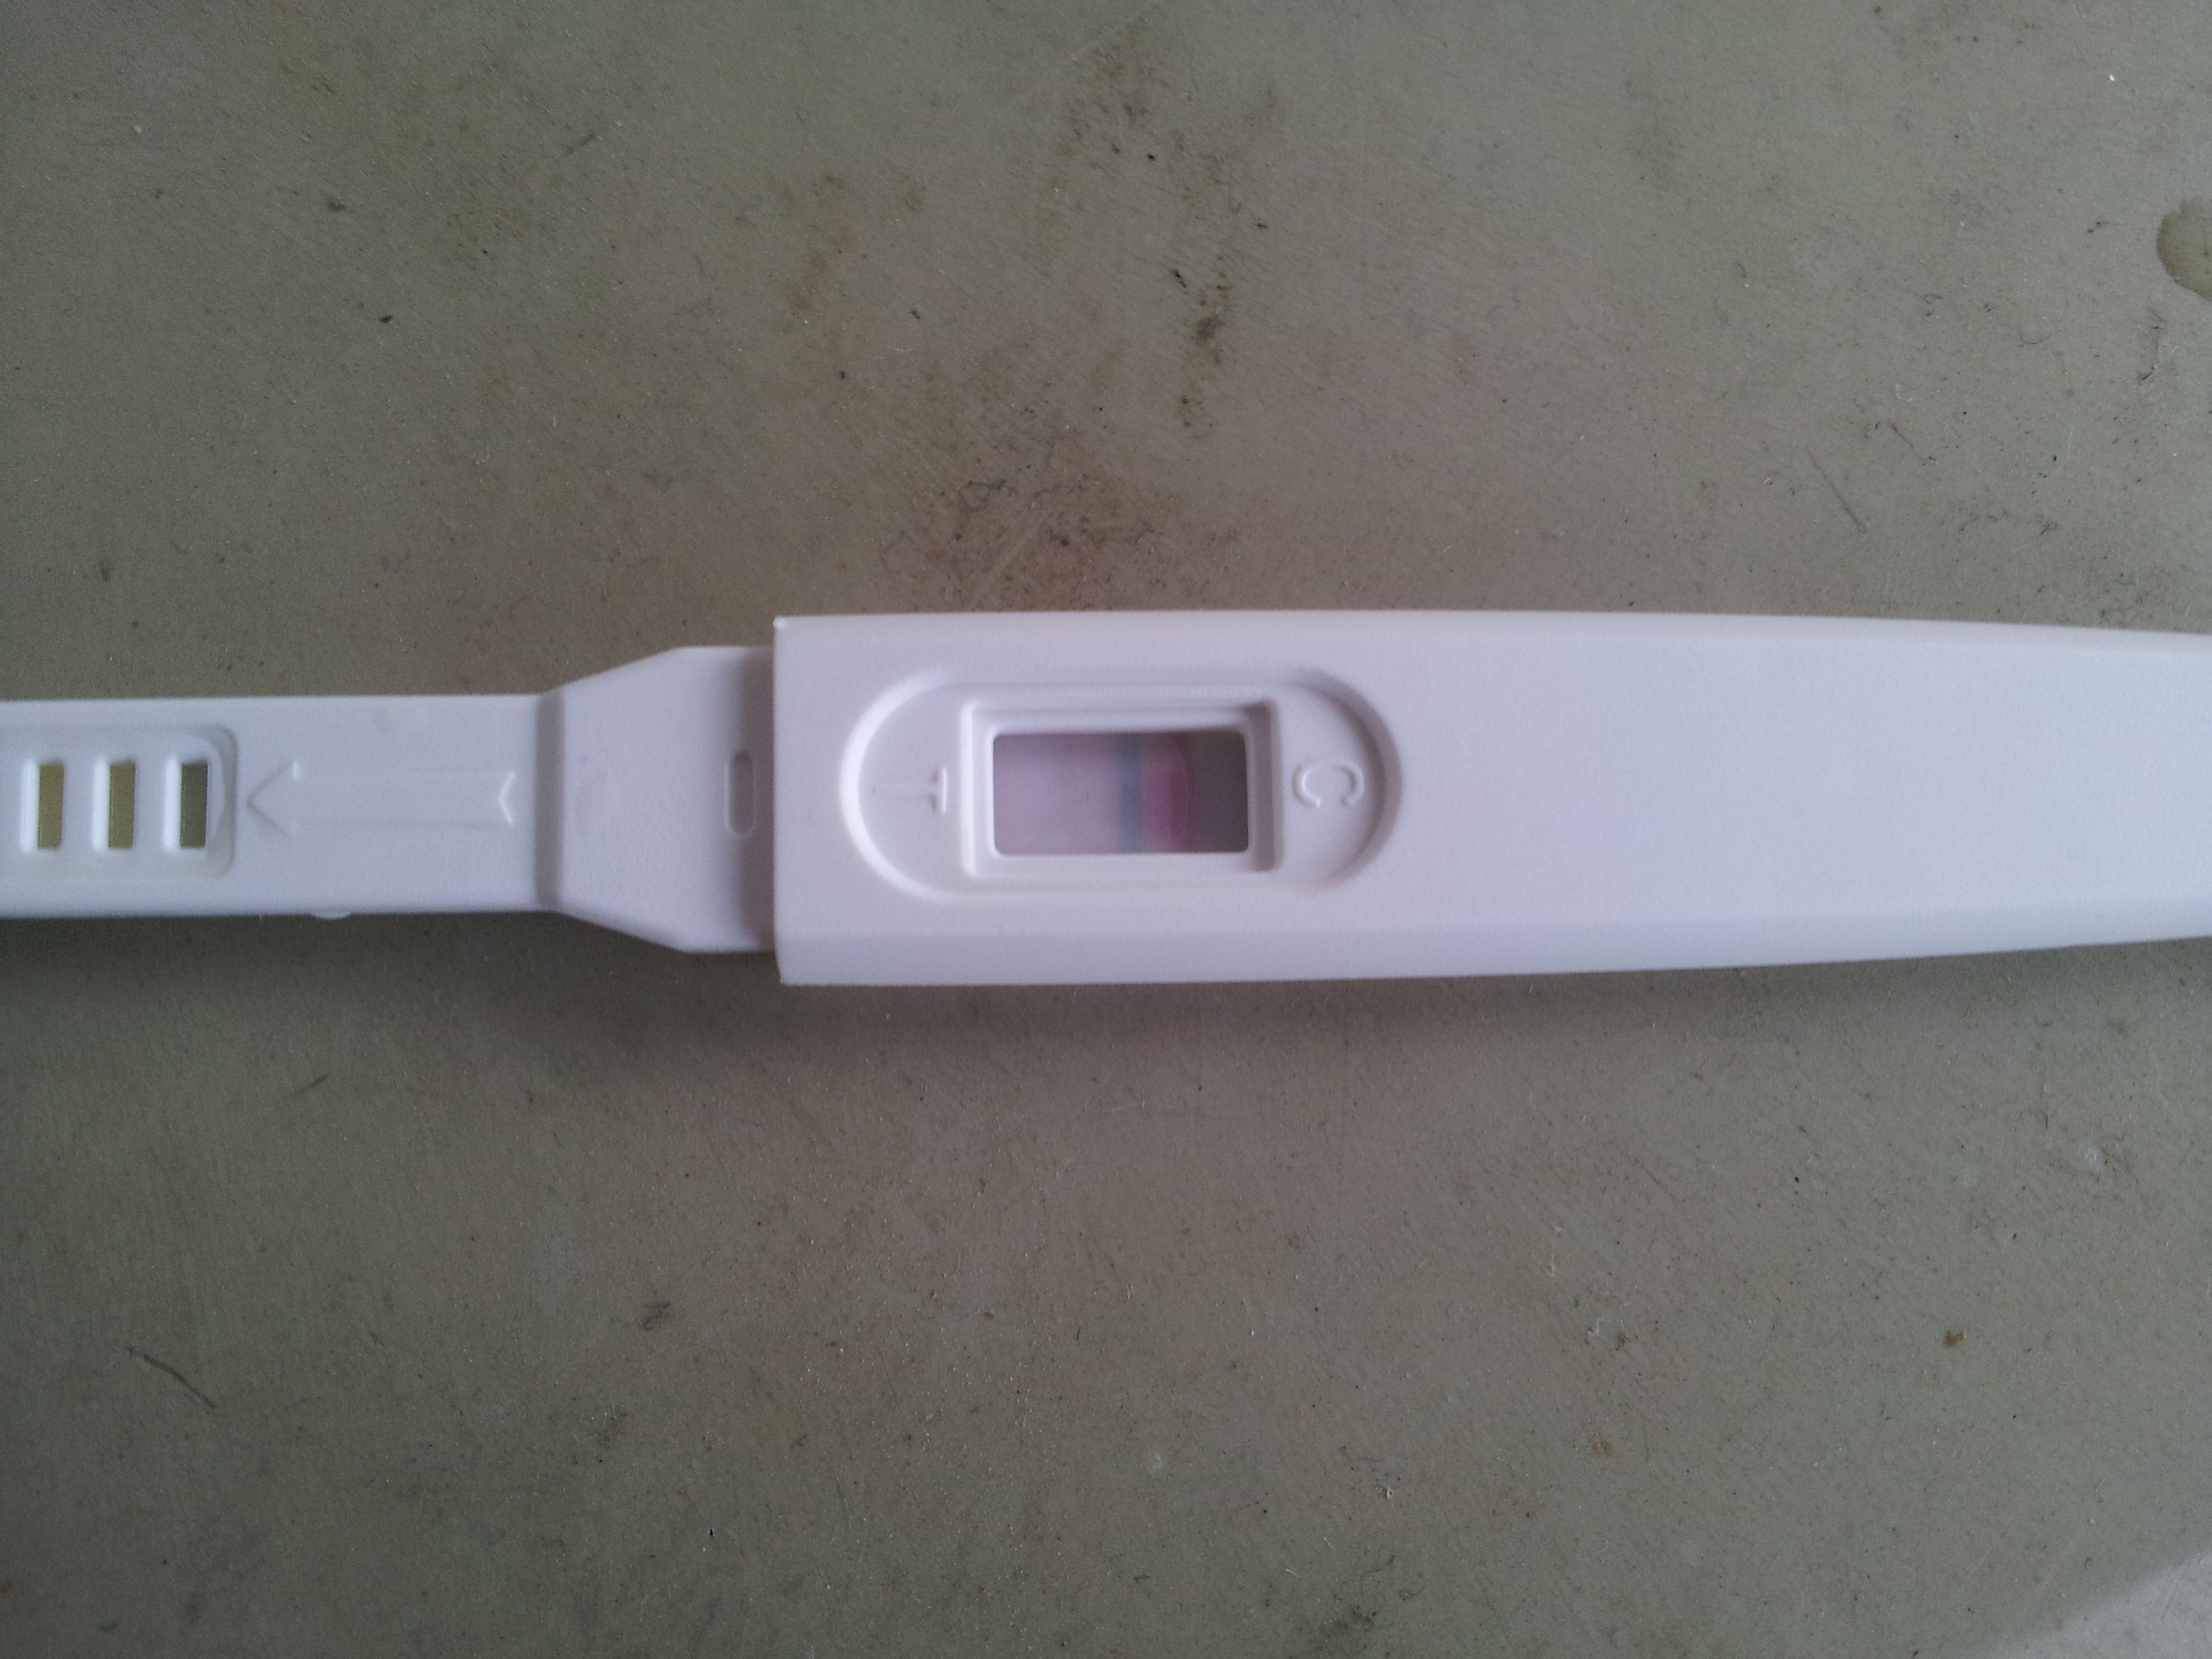 【批发】毓婷早早孕检测试纸验孕棒快速检测卡早孕笔验孕精准备孕-阿里巴巴